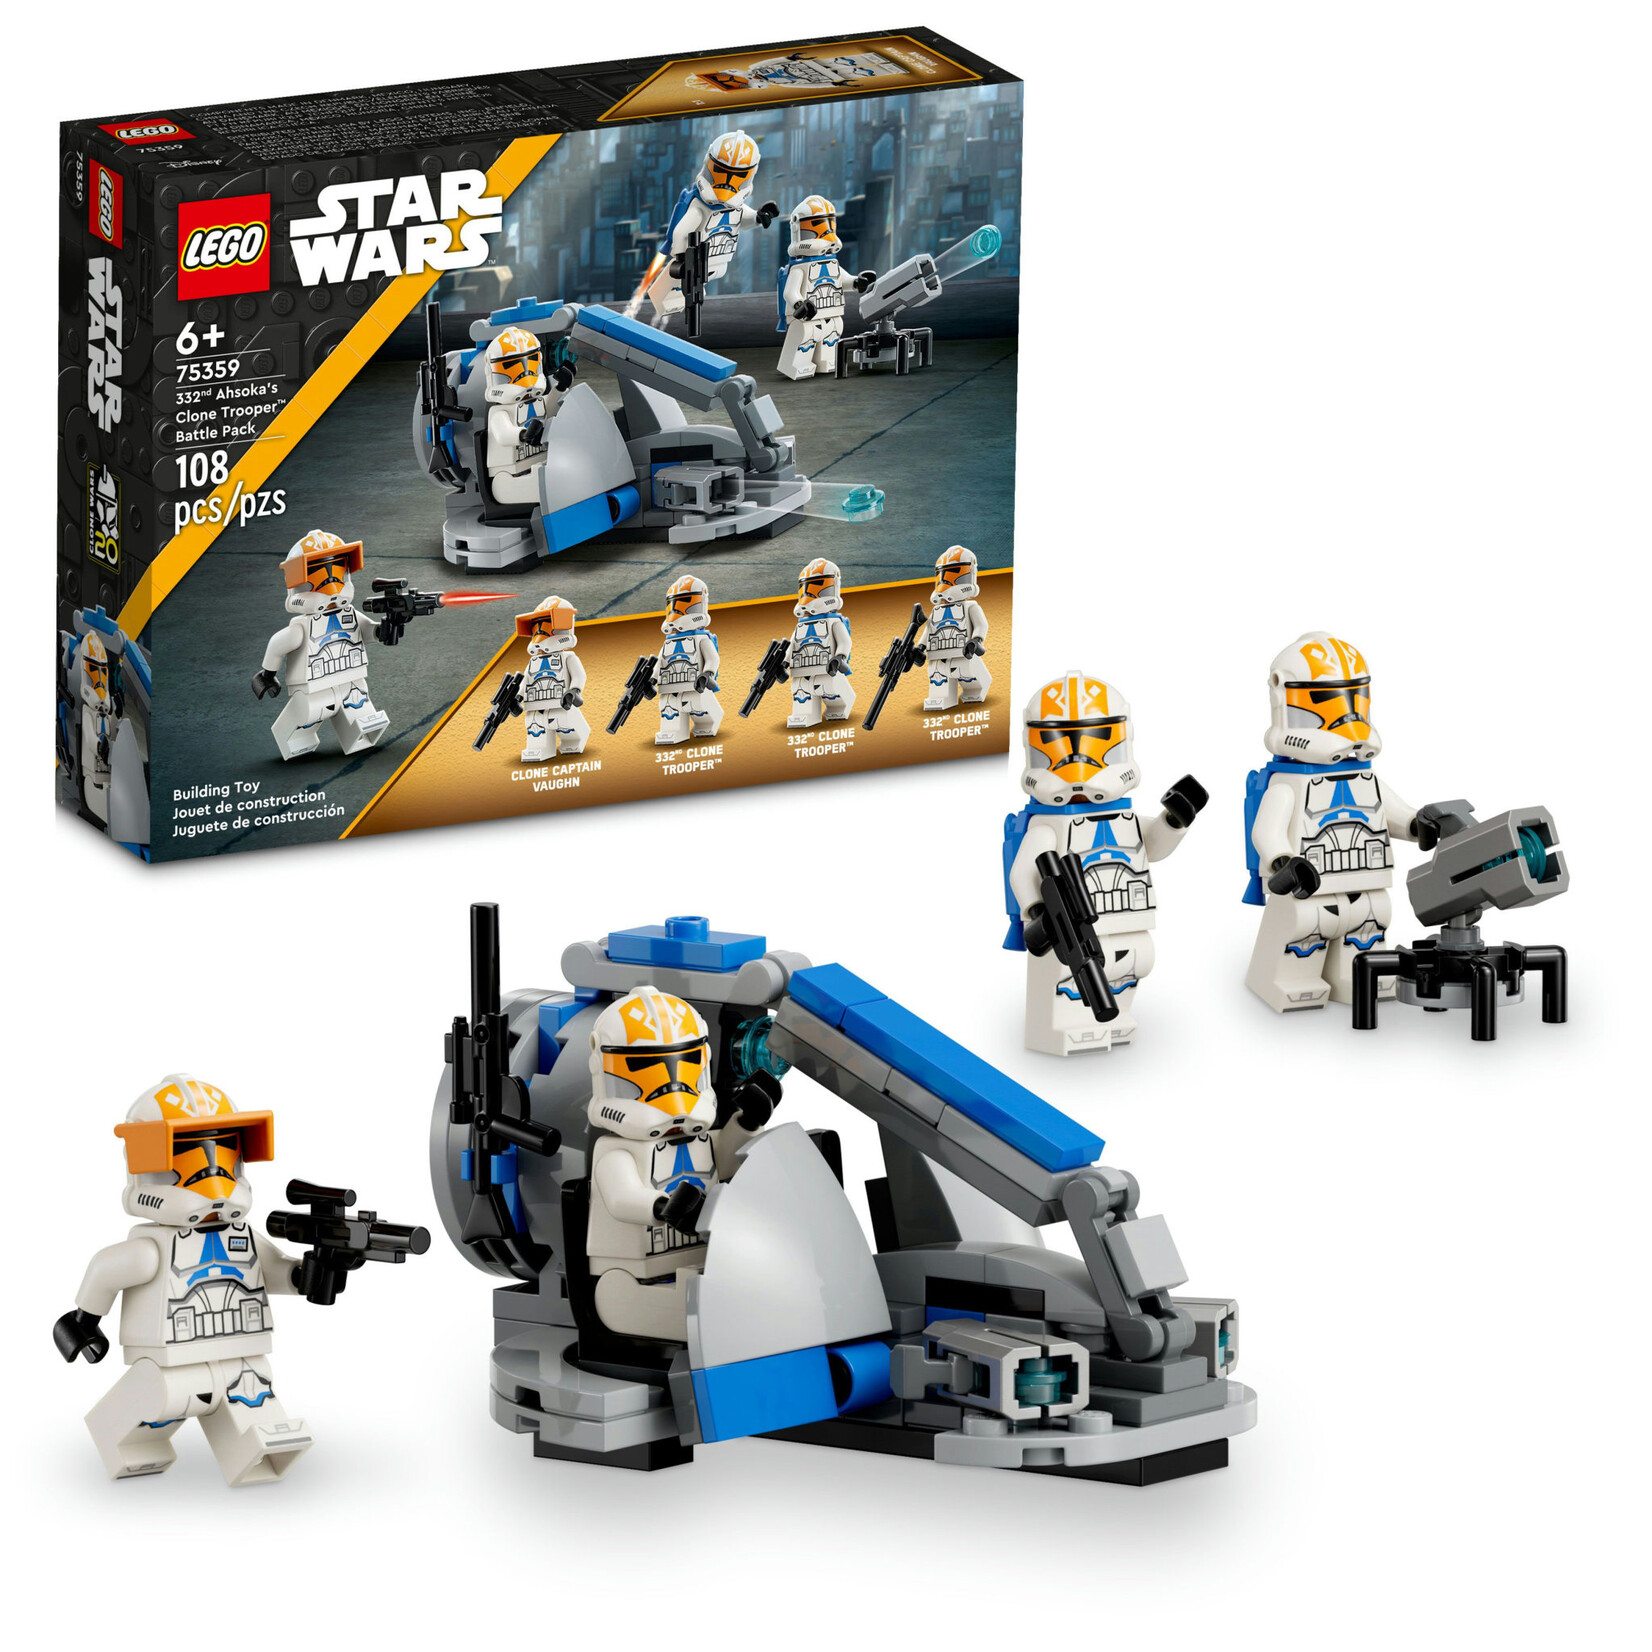 LEGO LEGO Star Wars 332nd Ahsoka's Clone Trooper Battle Pack 75359